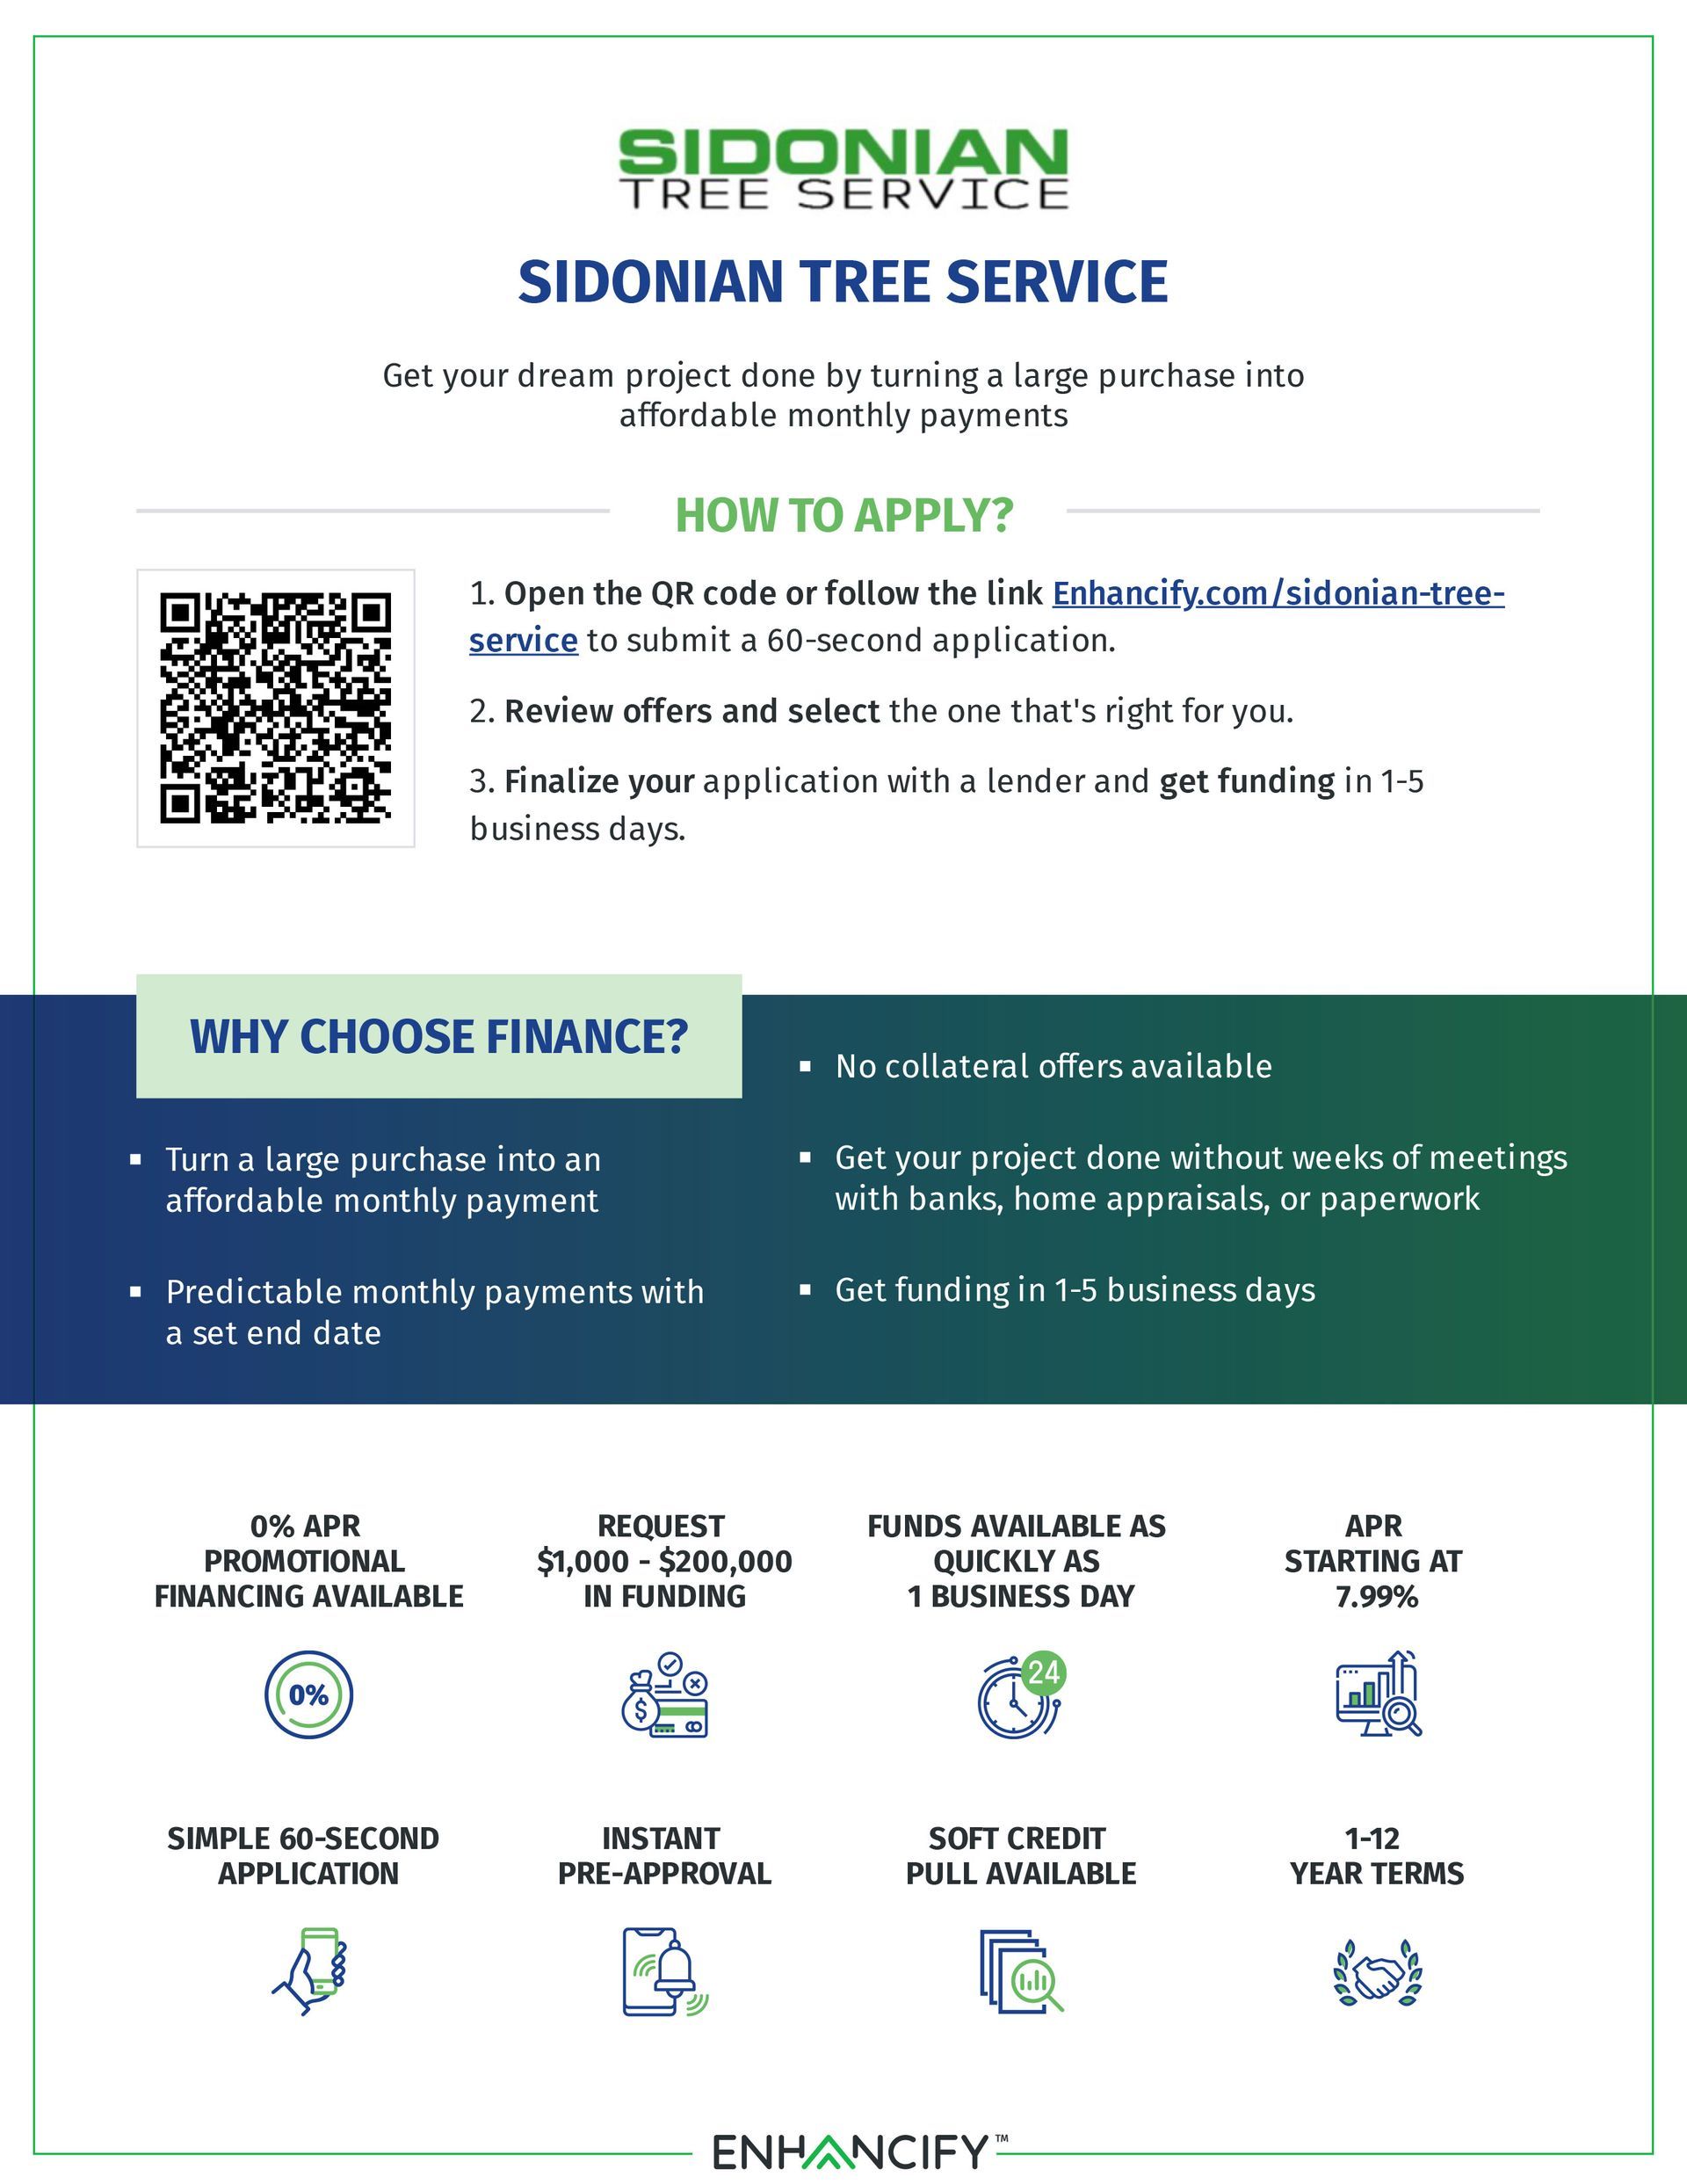 sidonian tree service financing option 1